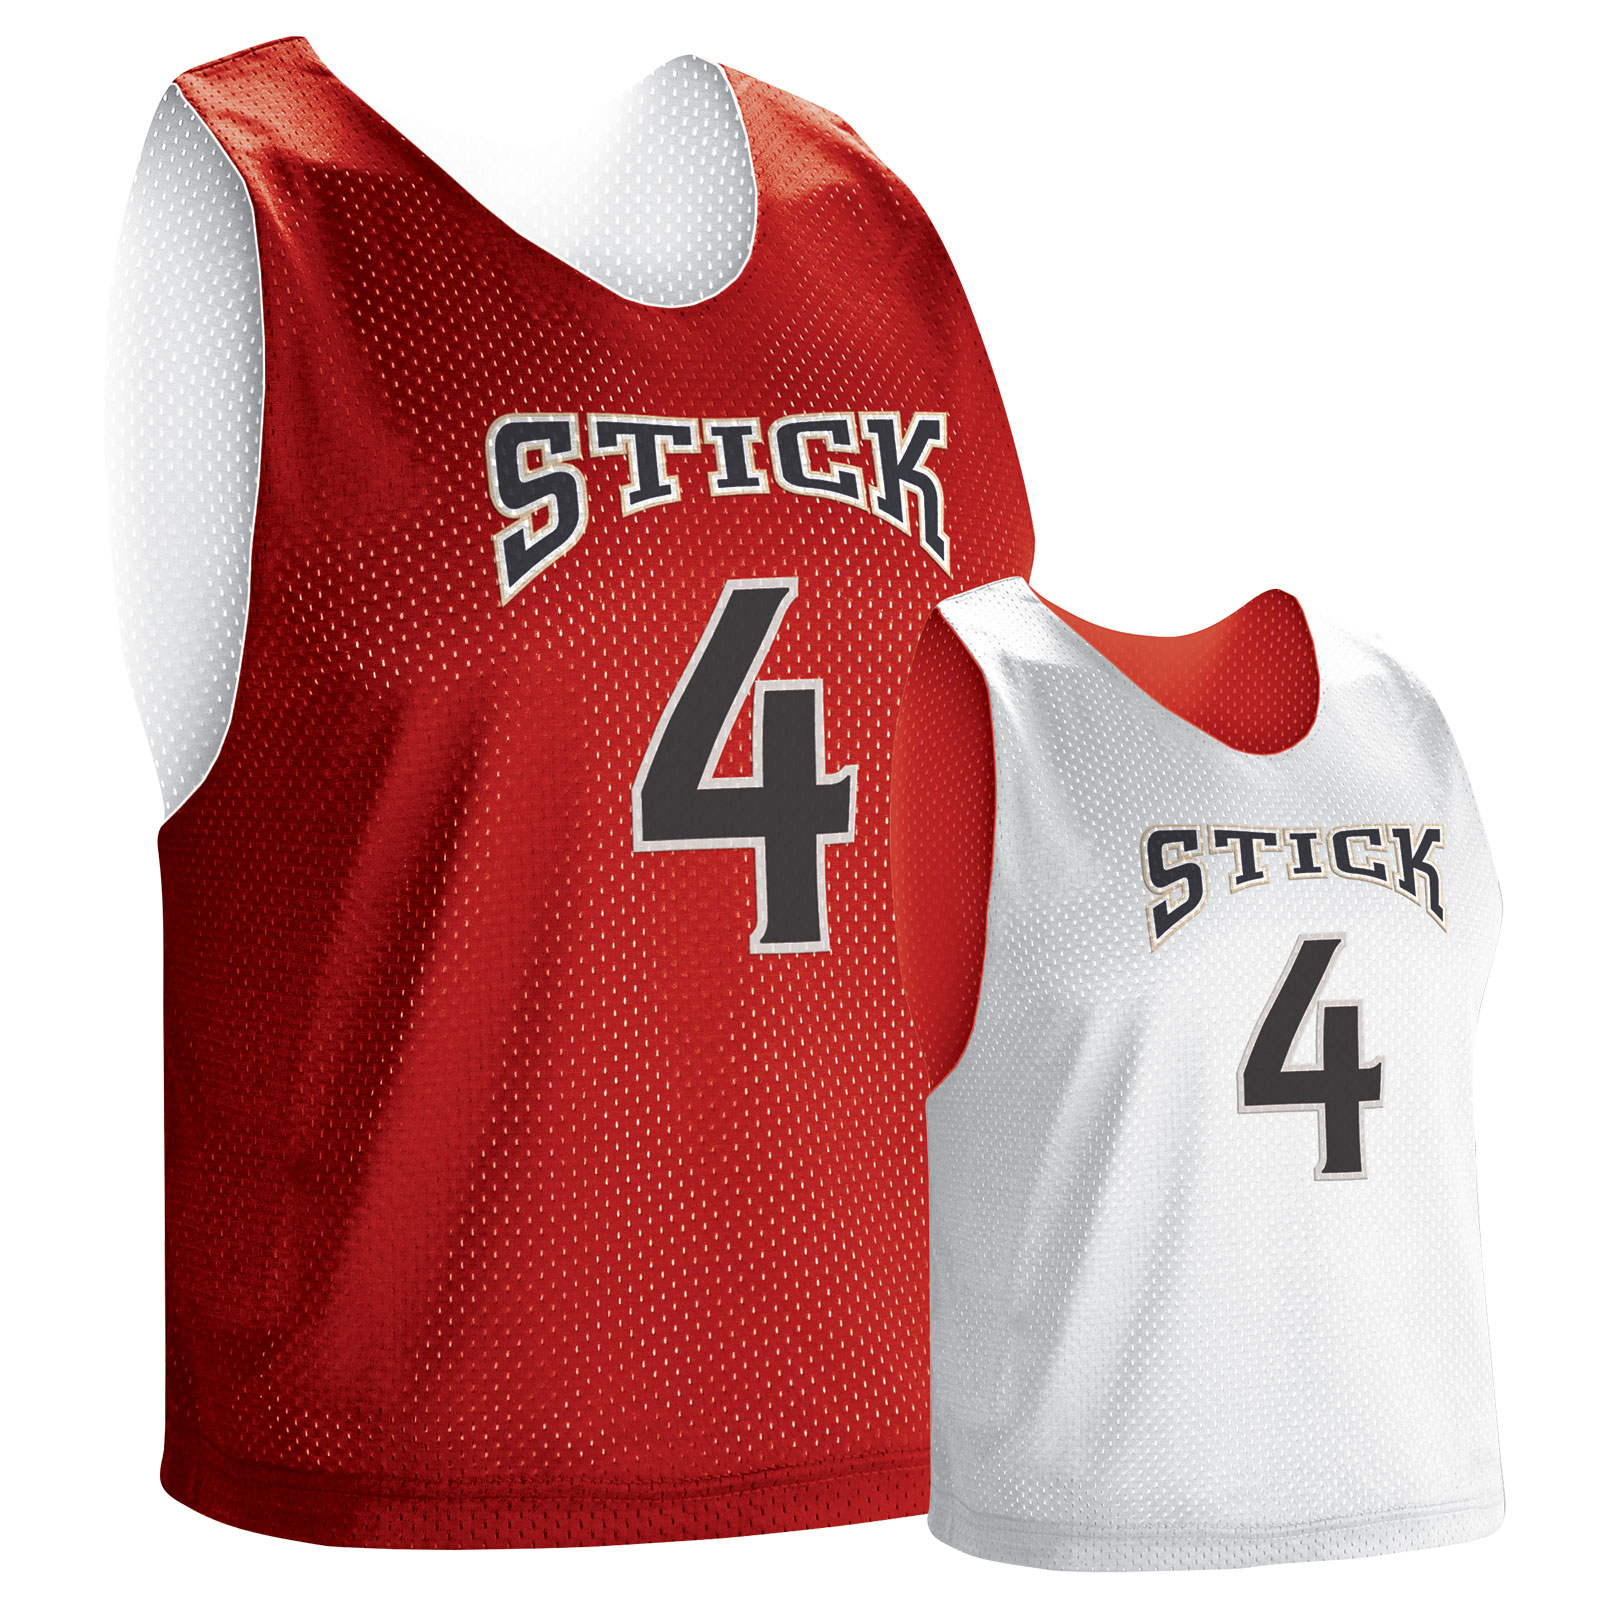 lacrosse-apparel-men's-jerseys-stock-men's-jerseys